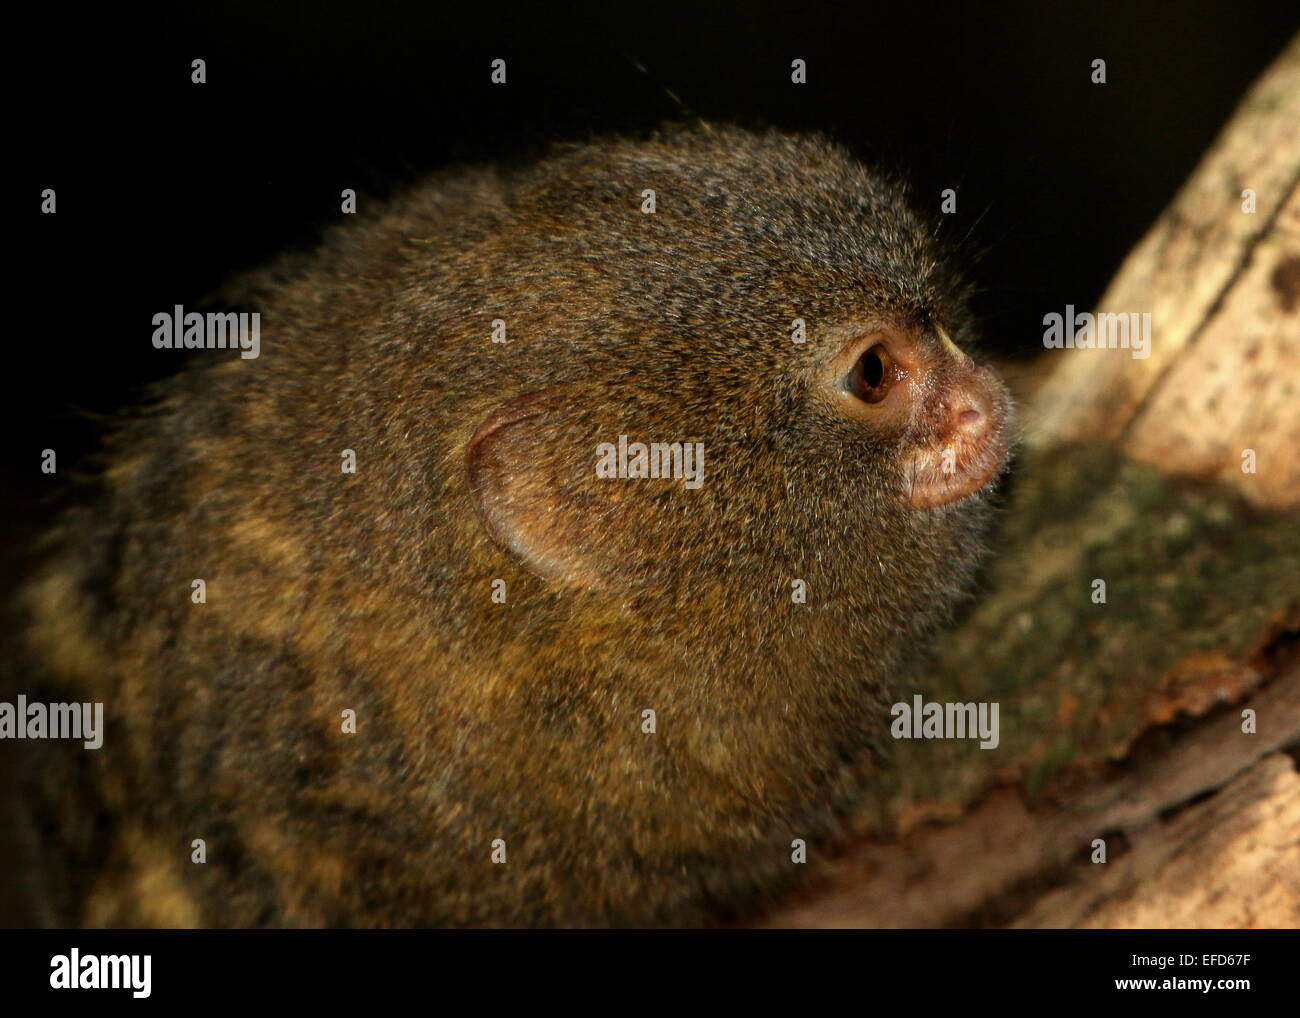 Sud Americana pigmeo (marmoset Callithrix pygmaea, Cebuella pygmaea), close-up della testa Foto Stock